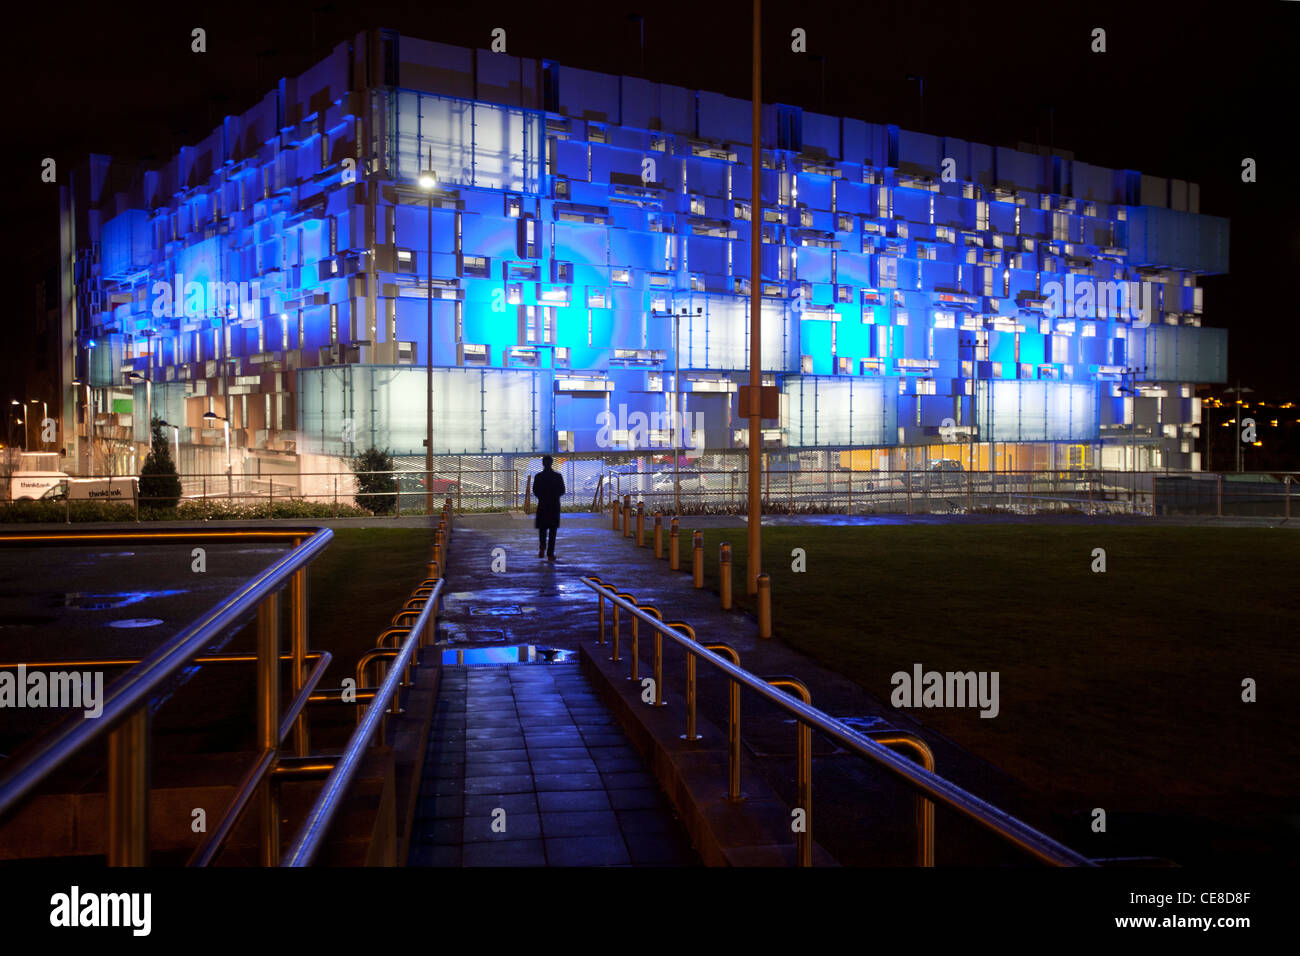 Ein modernes Parkhaus am Millennium Point Komplex, Birmingham, UK mit Blaulicht in der Nacht beleuchtet. Stockfoto